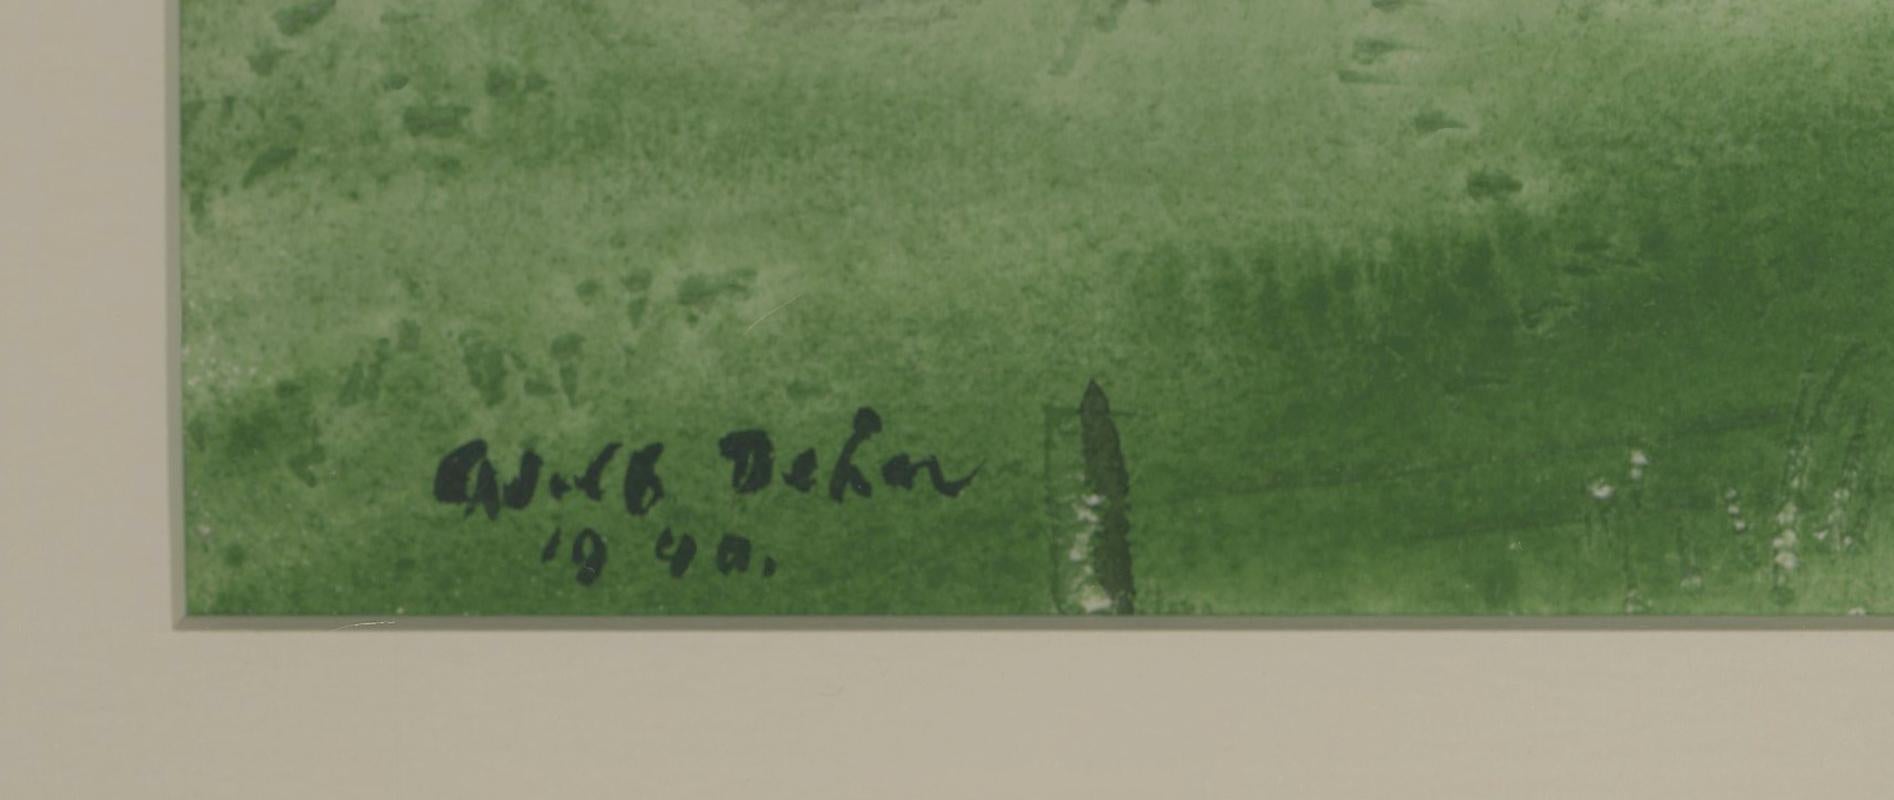 Les chevaux quittent l'étable
Aquarelle sur papier, 1940
Signé et daté en bas à gauche (voir photo)
Condit : Excellent
Image : 14 1/2 x 21